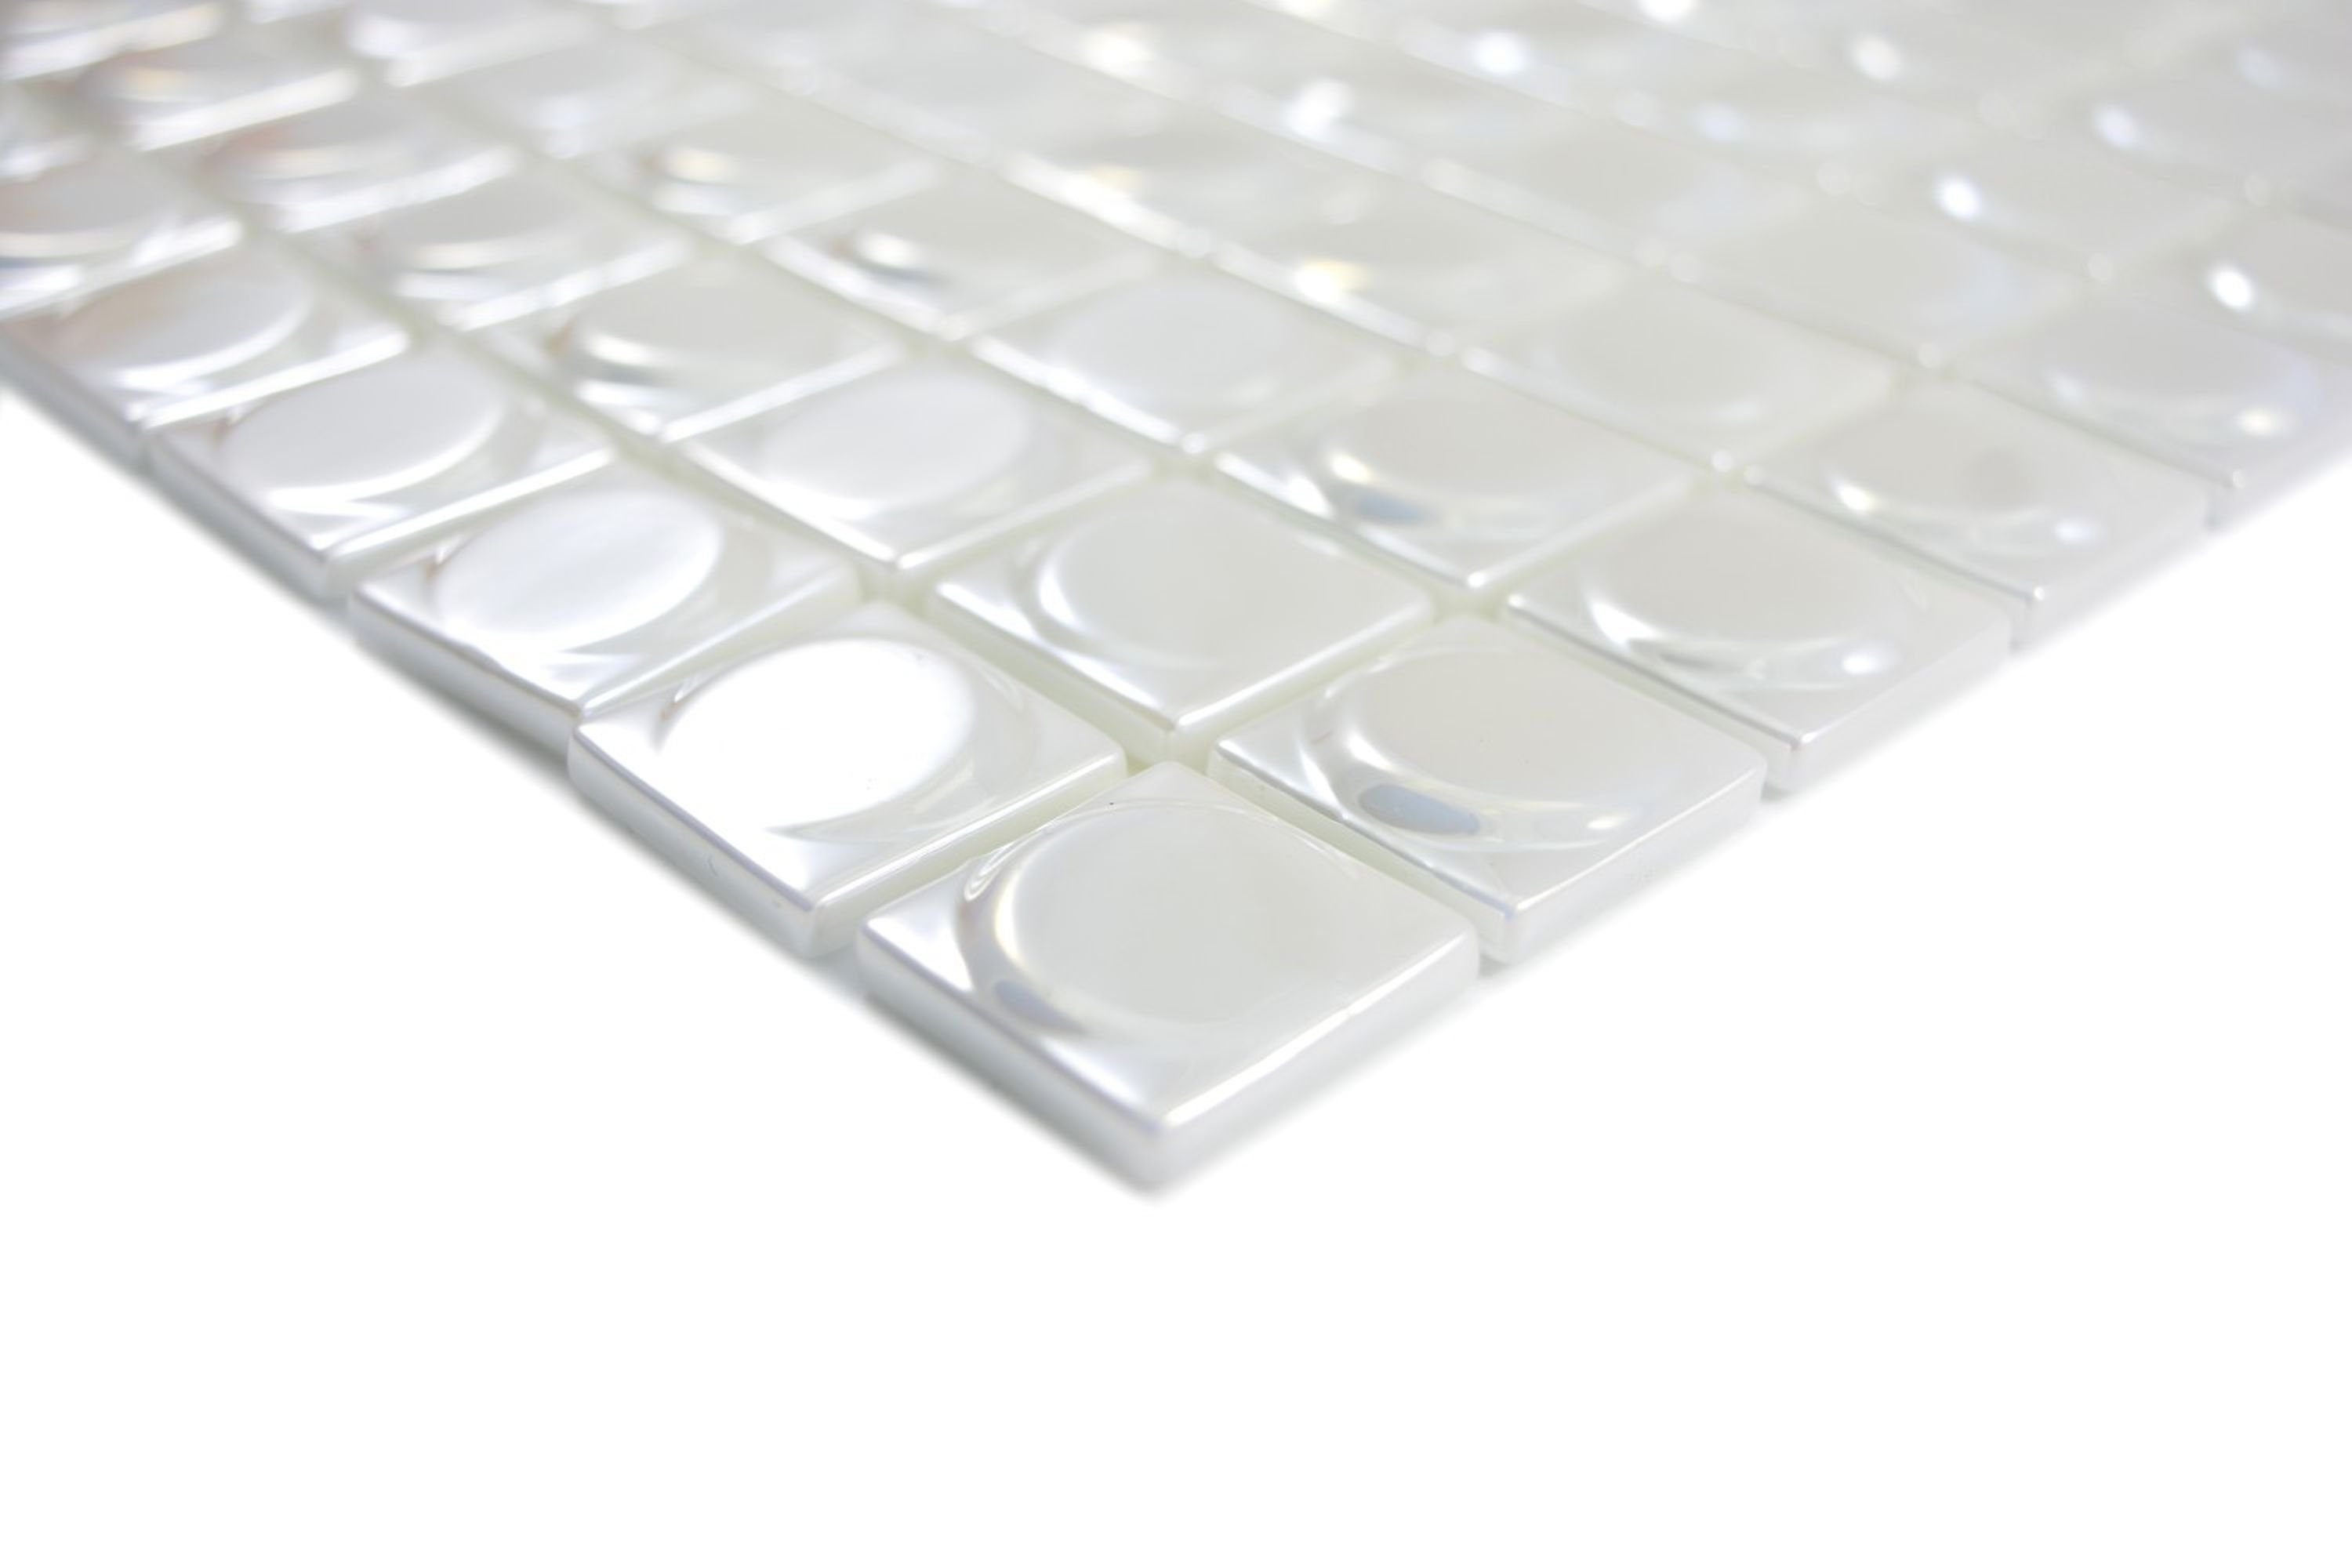 Mosani Mosaikfliesen Recycling Glasmosaik Mosaikfliesen / Mosaikmatten glänzend weiß 10